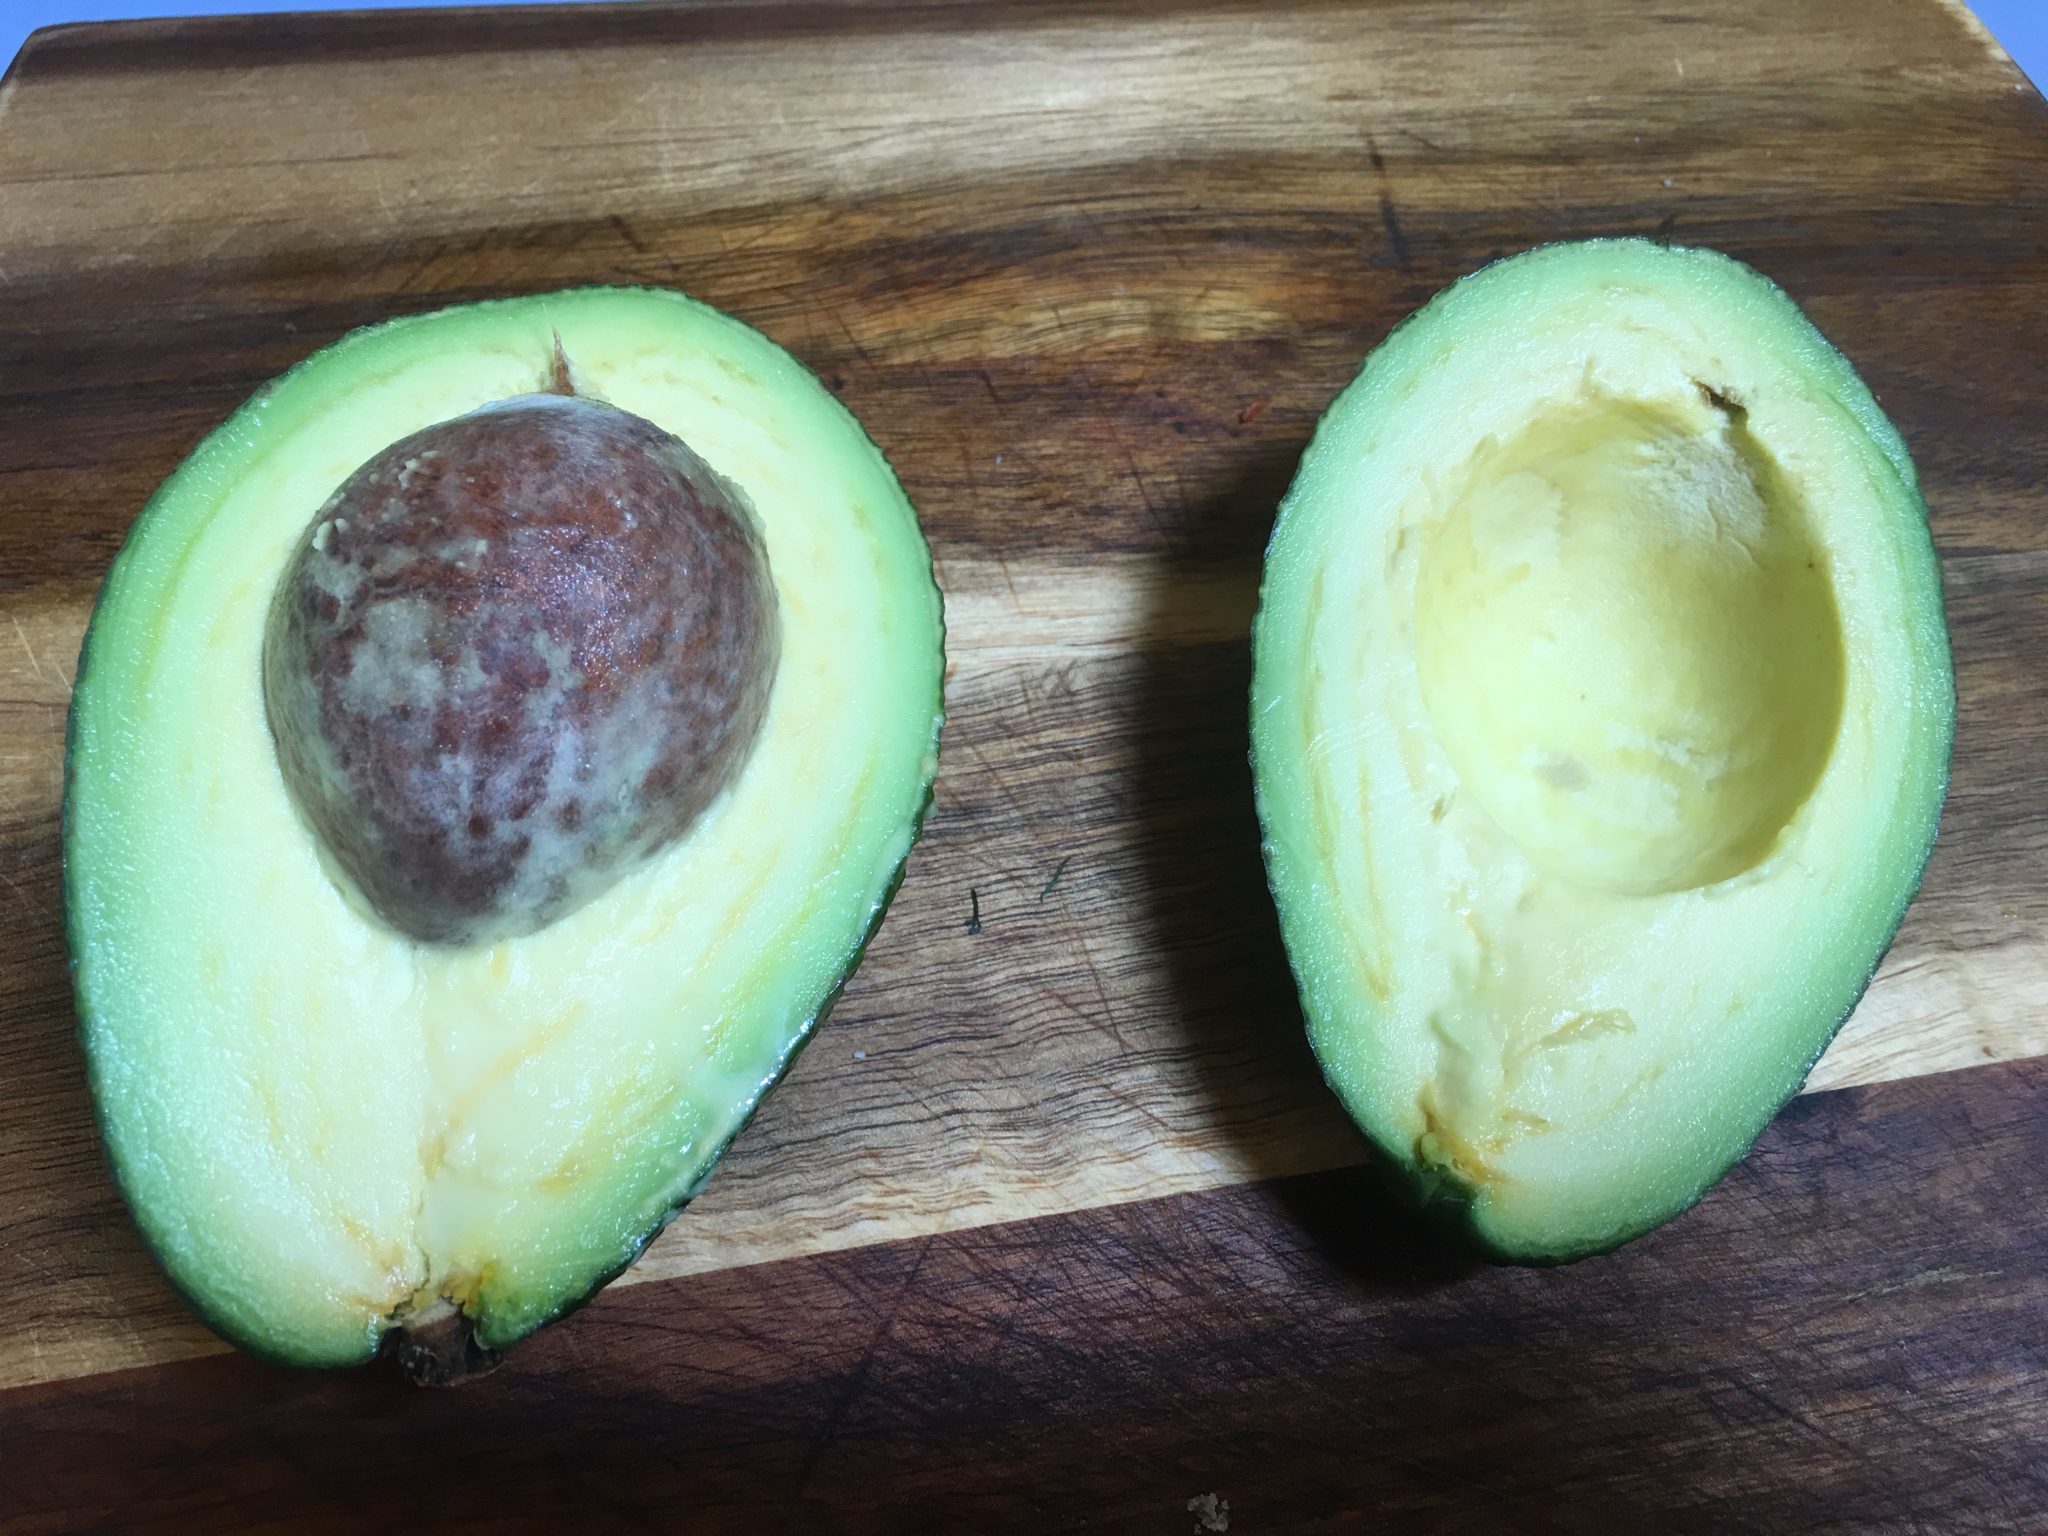 Cous cous a colori - avocado tagliato a metà